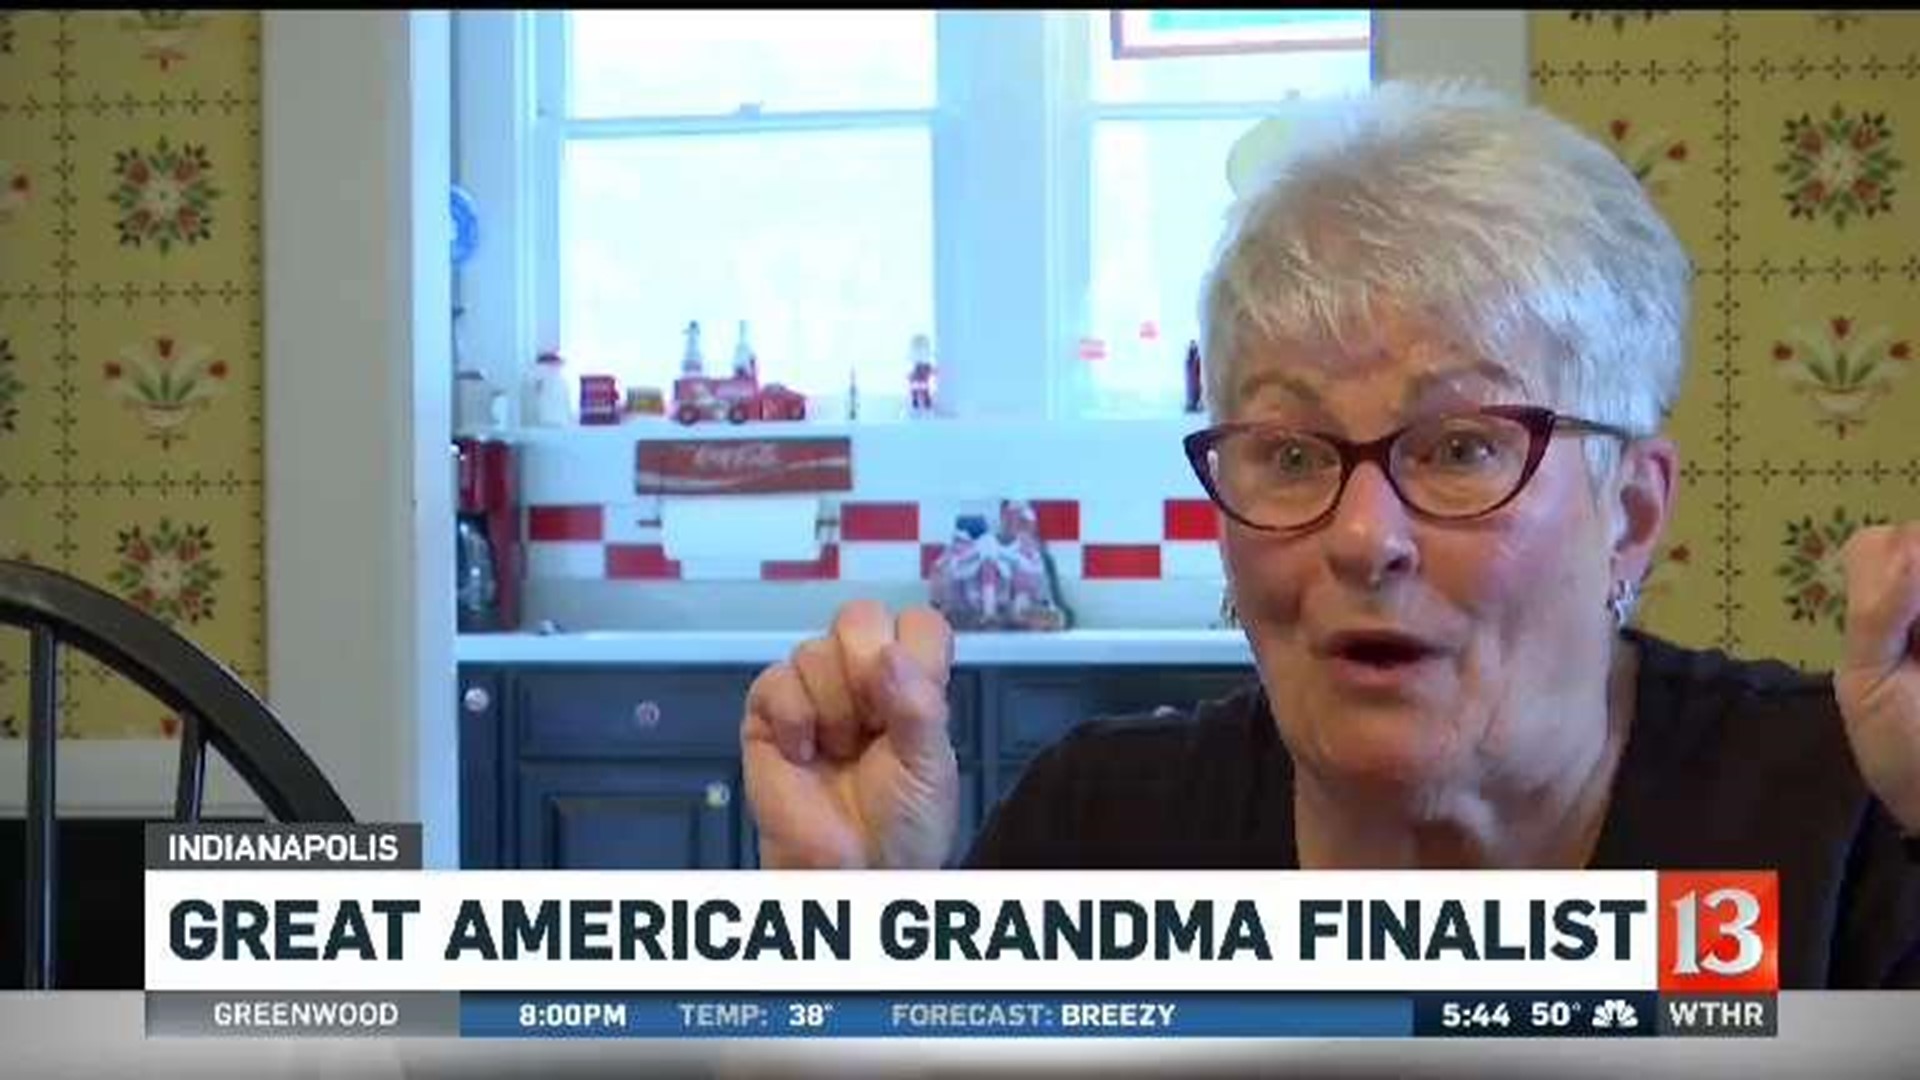 Great American Grandma